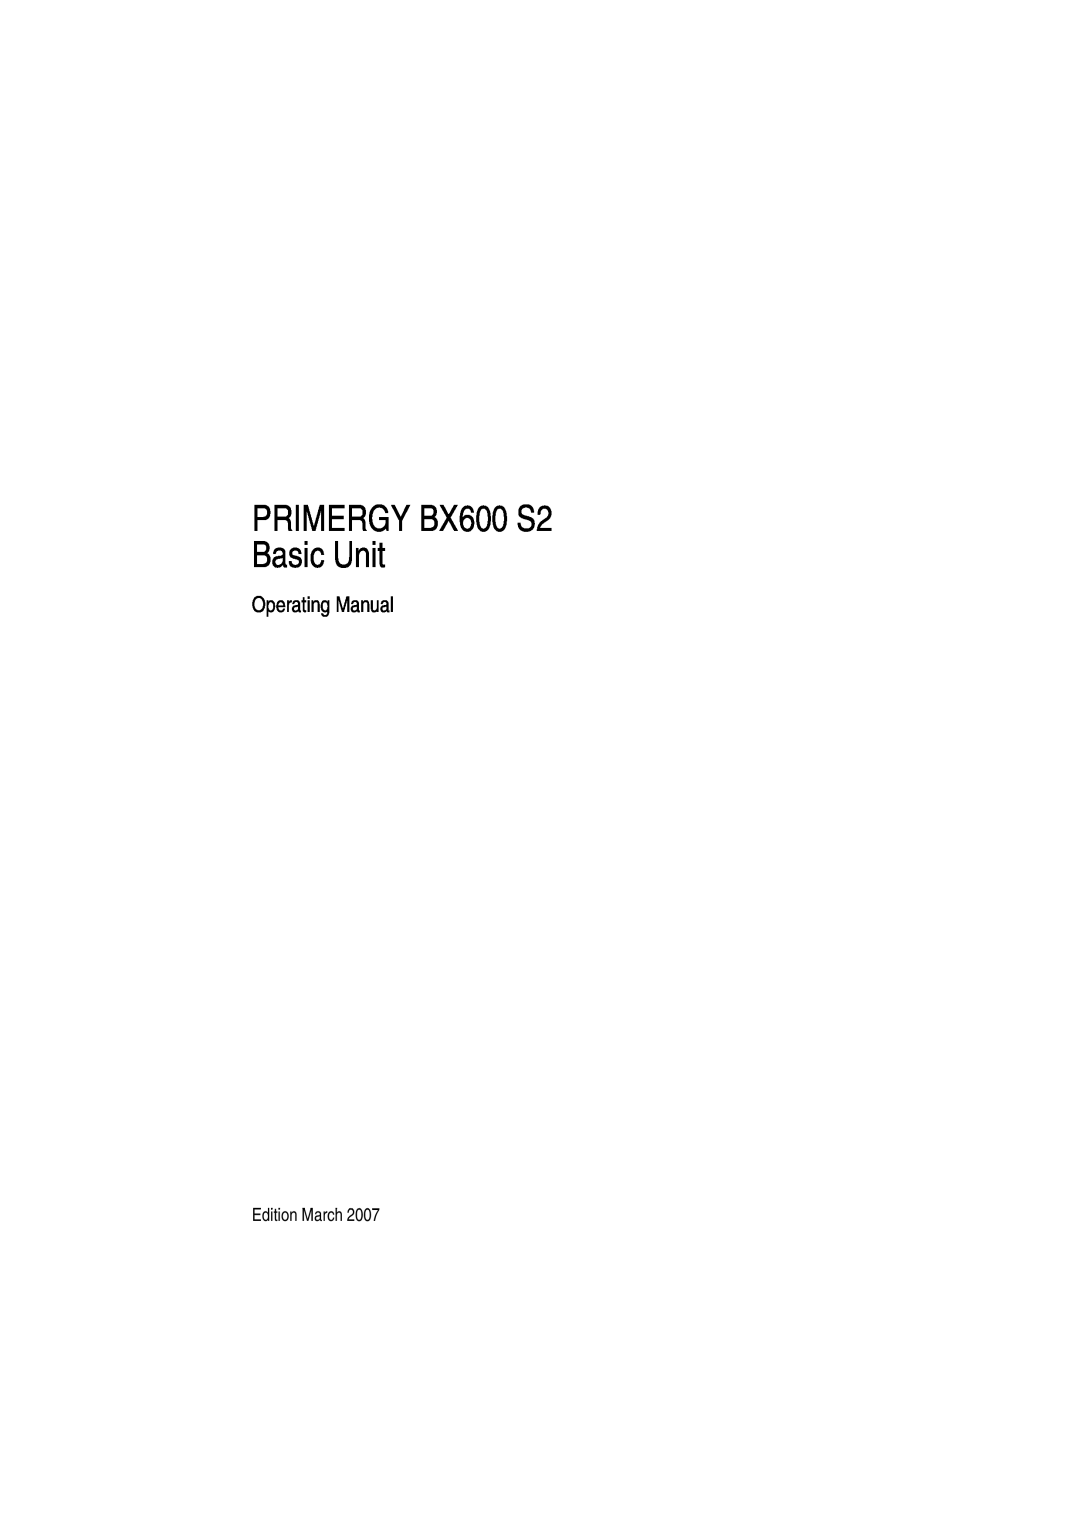 Fujitsu manual Operating Manual, PRIMERGY BX600 S2 Basic Unit 